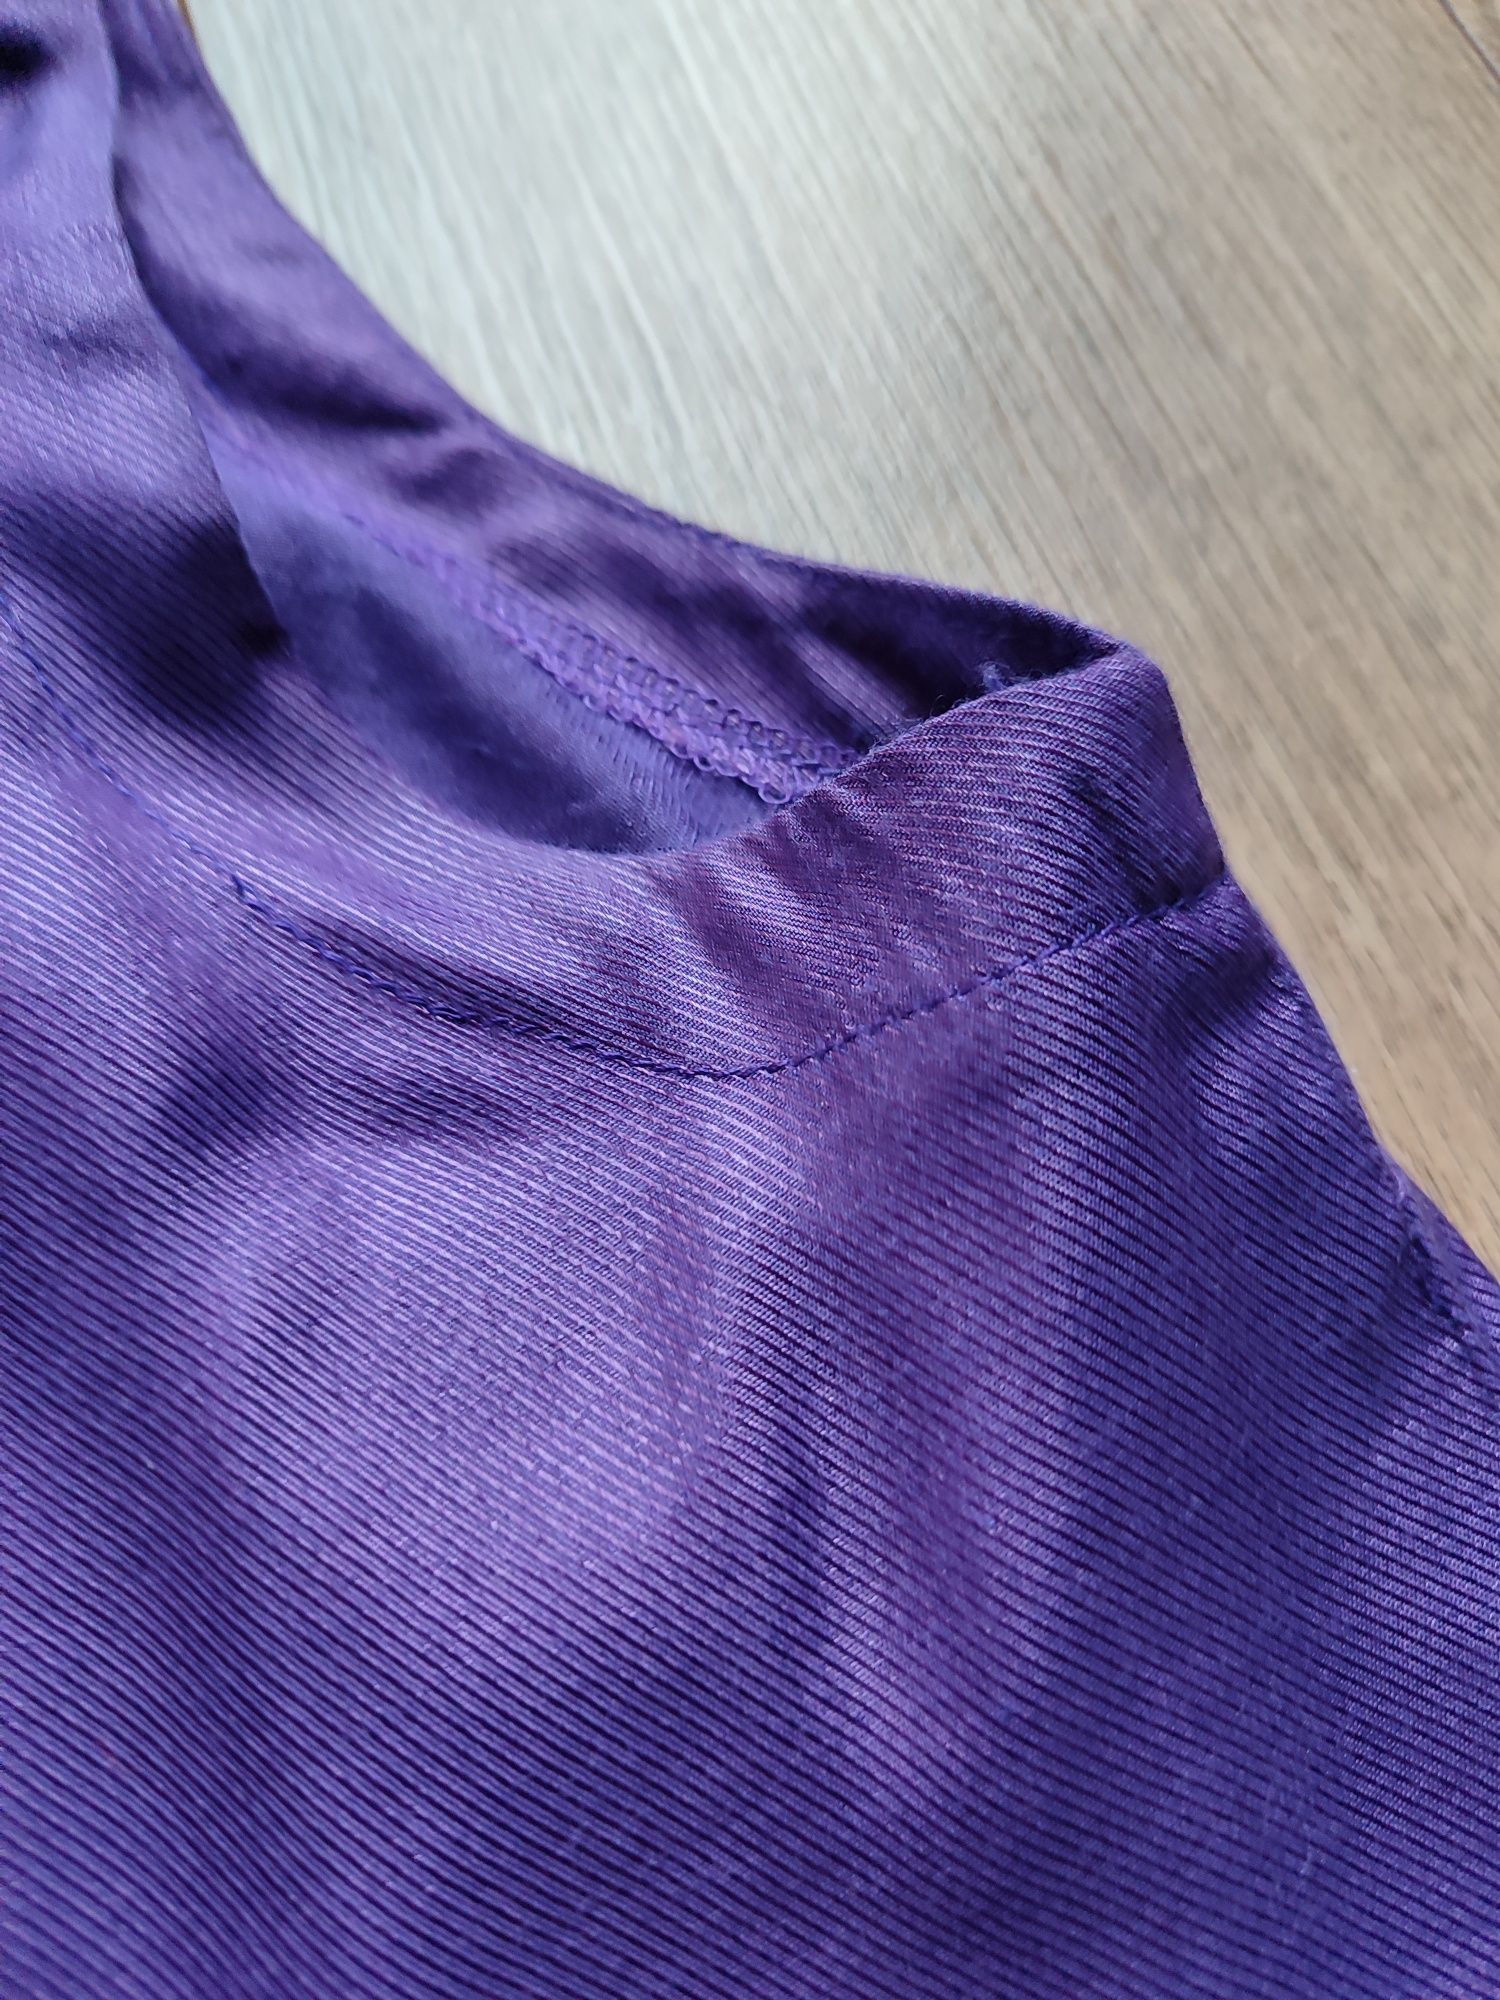 Fioletowa bluzka bez rękawów zapinana na plecach 36 S guziki